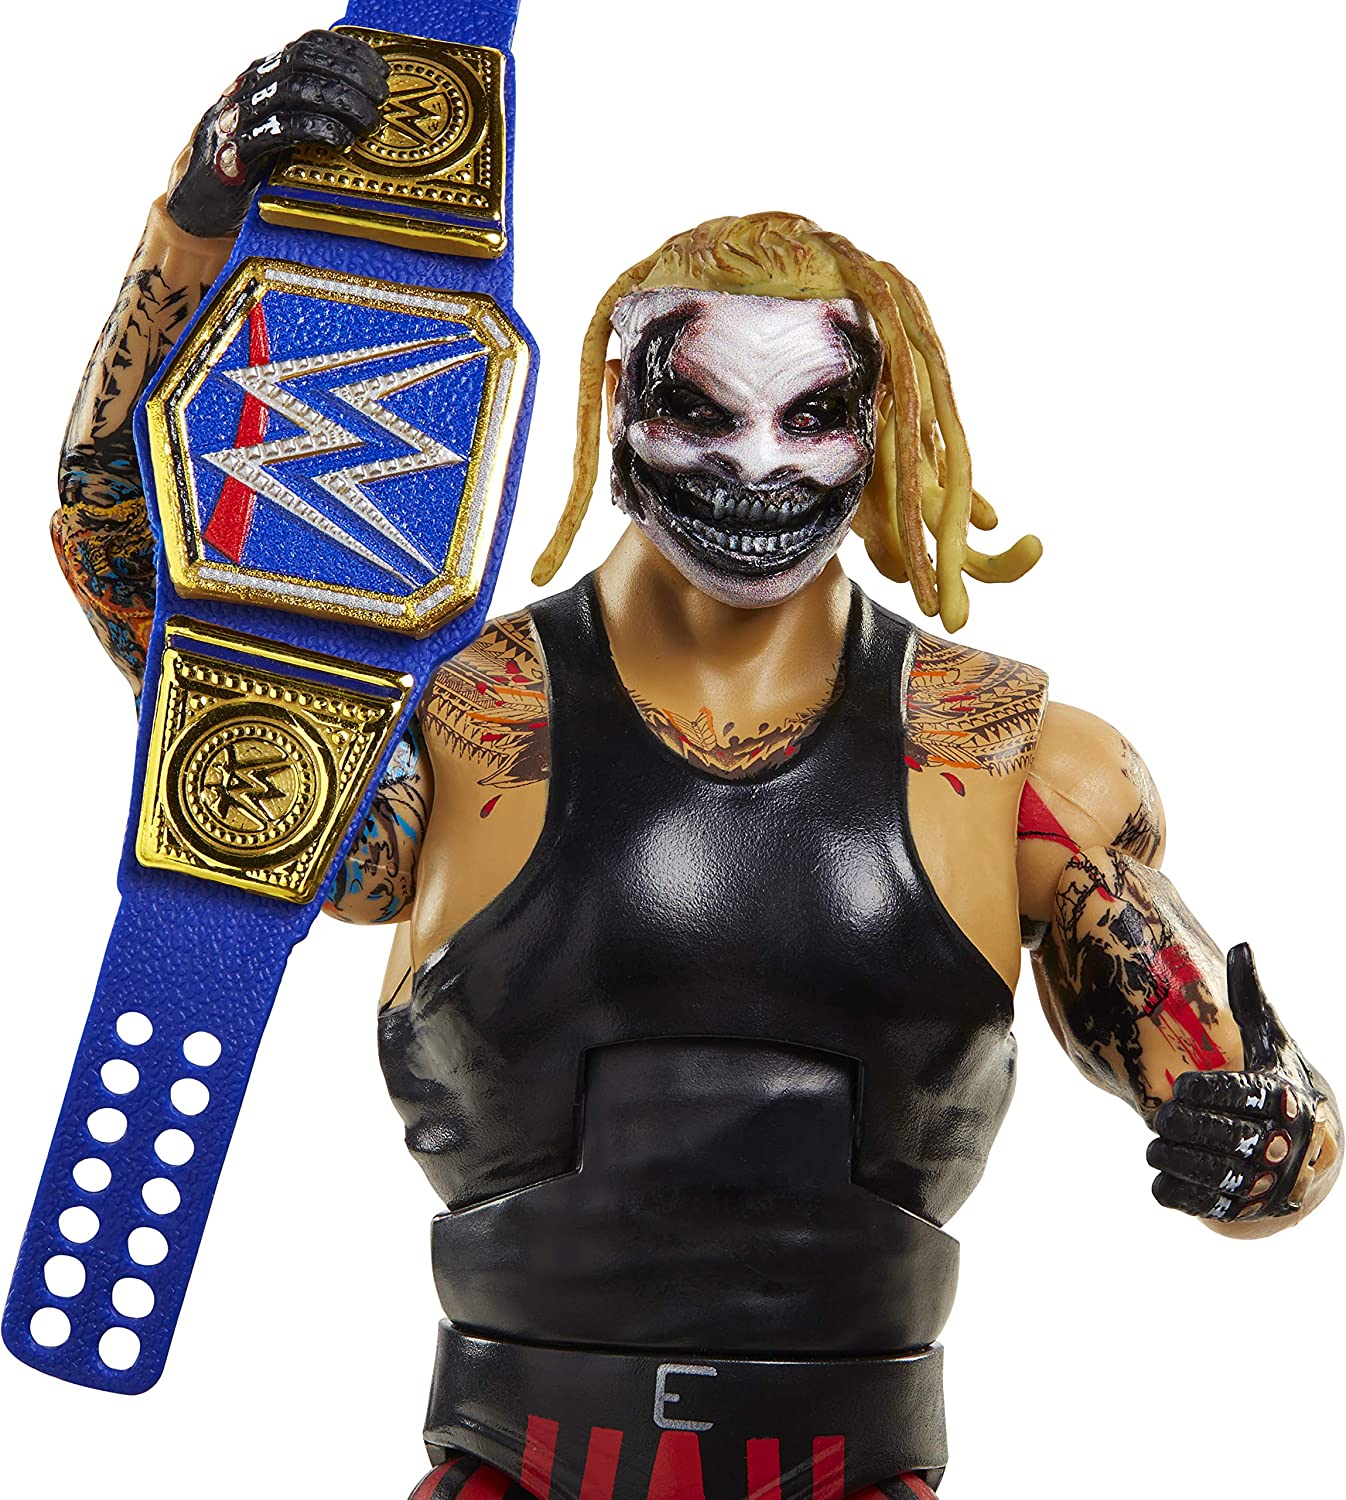 2021 WWE Mattel Elite Collection Series 86 "The Fiend" Bray Wyatt